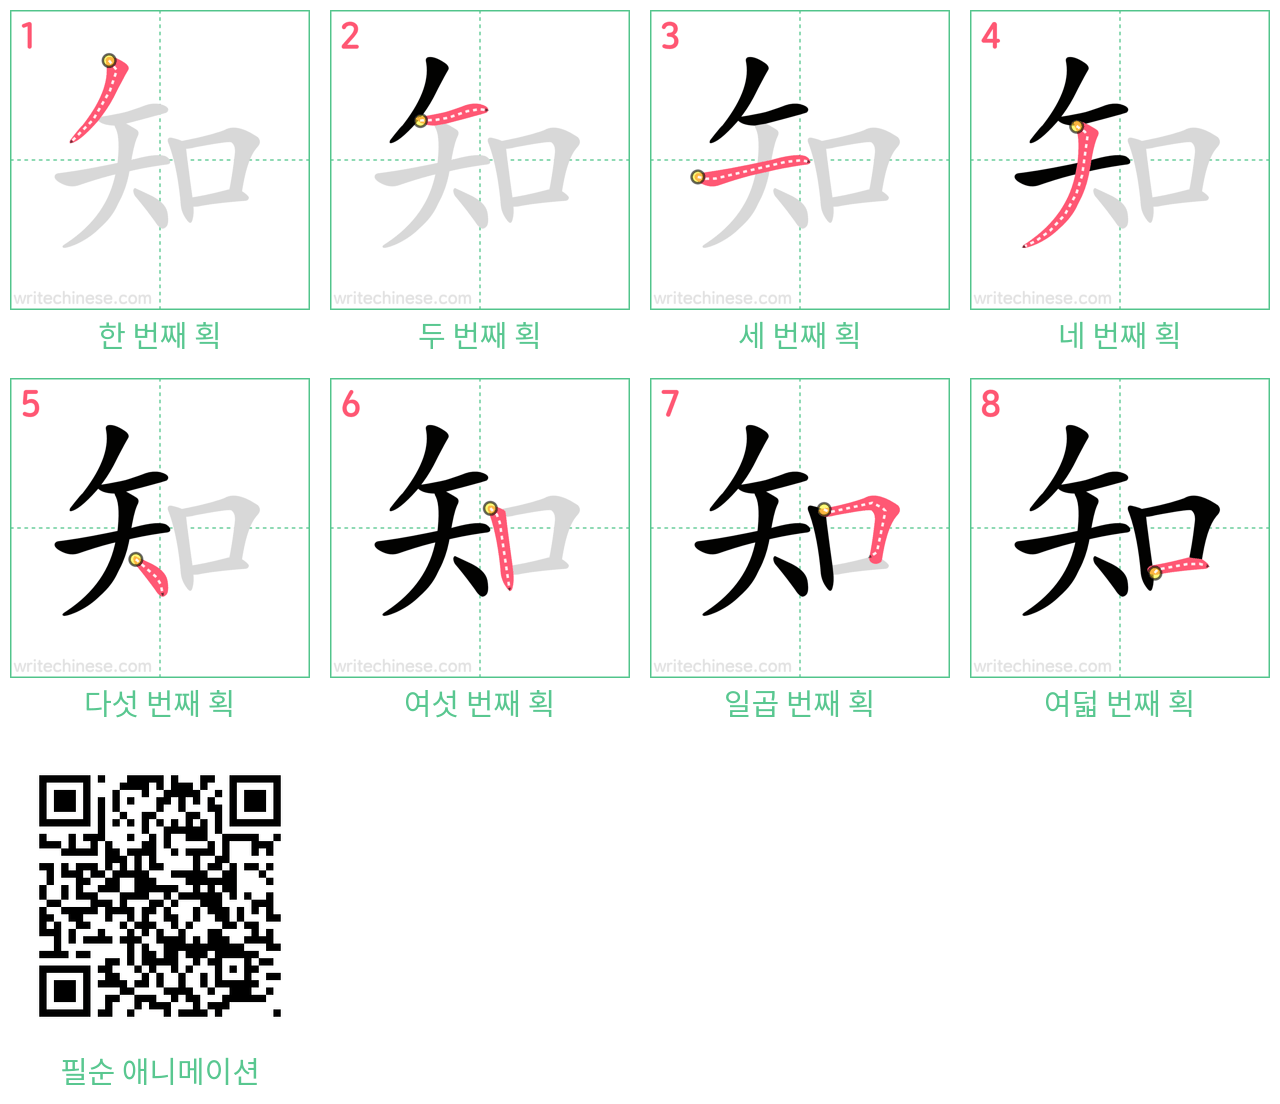 知 step-by-step stroke order diagrams